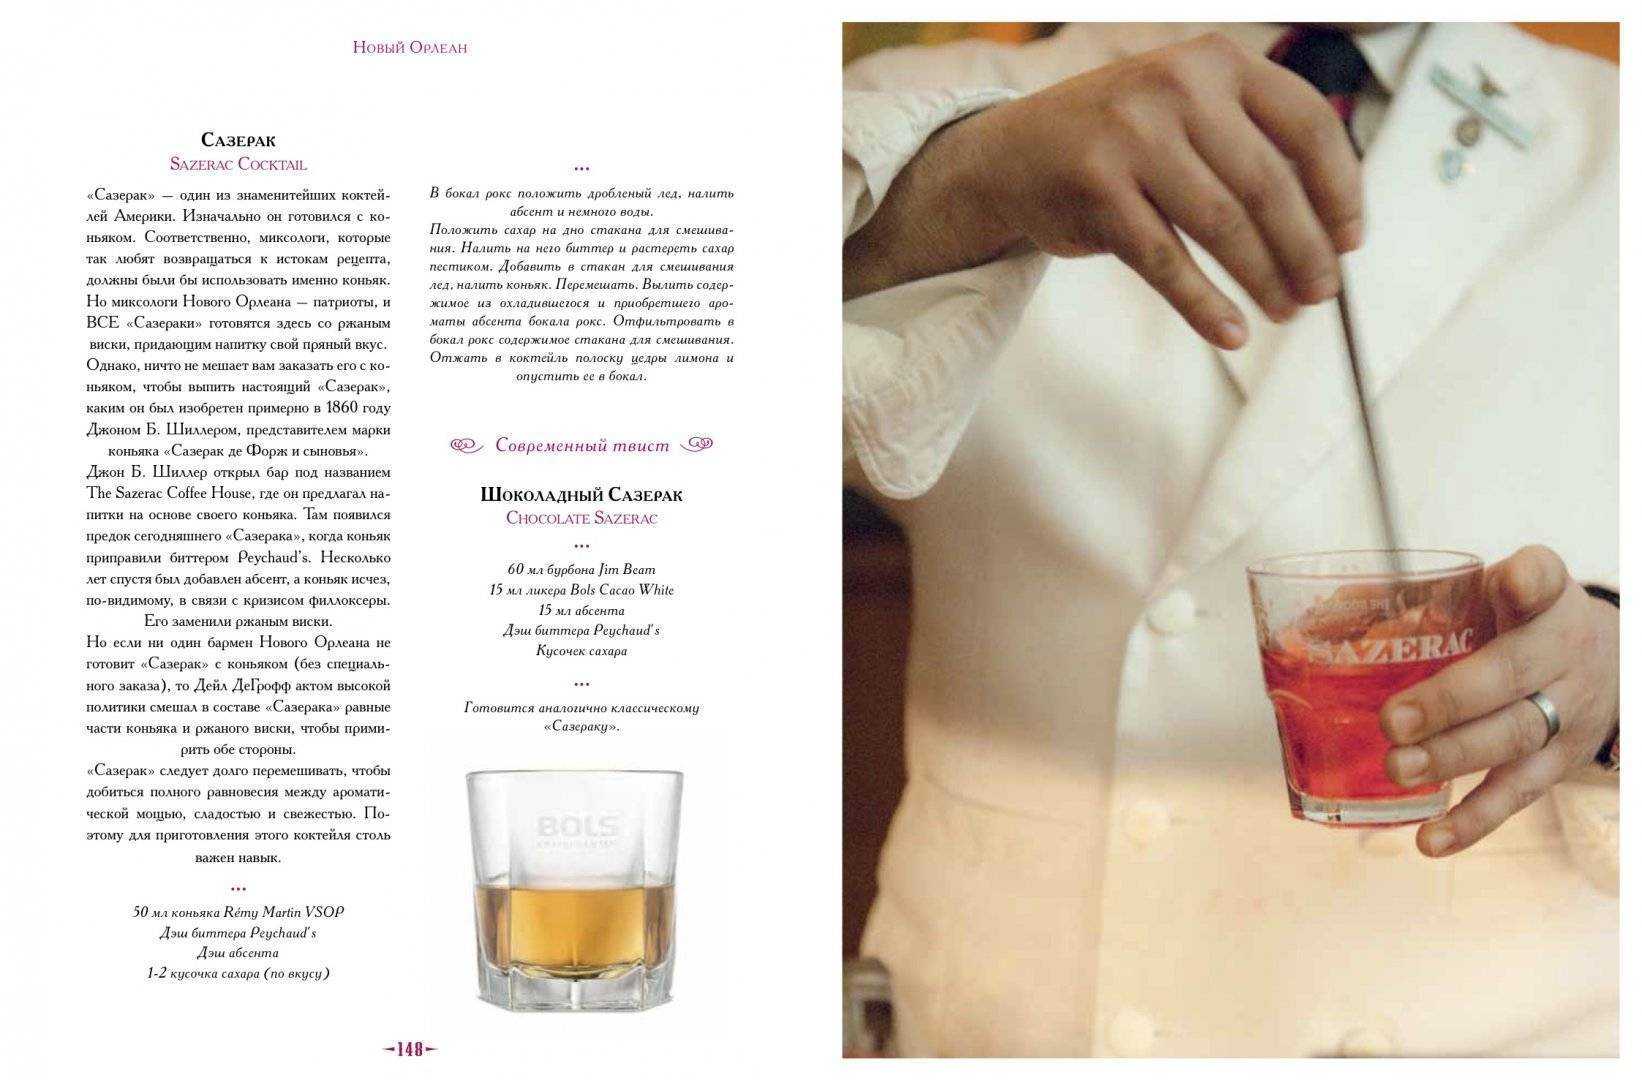 Кир рояль: состав, пропорции, лучший проверенный рецепт французского коктейля с фото